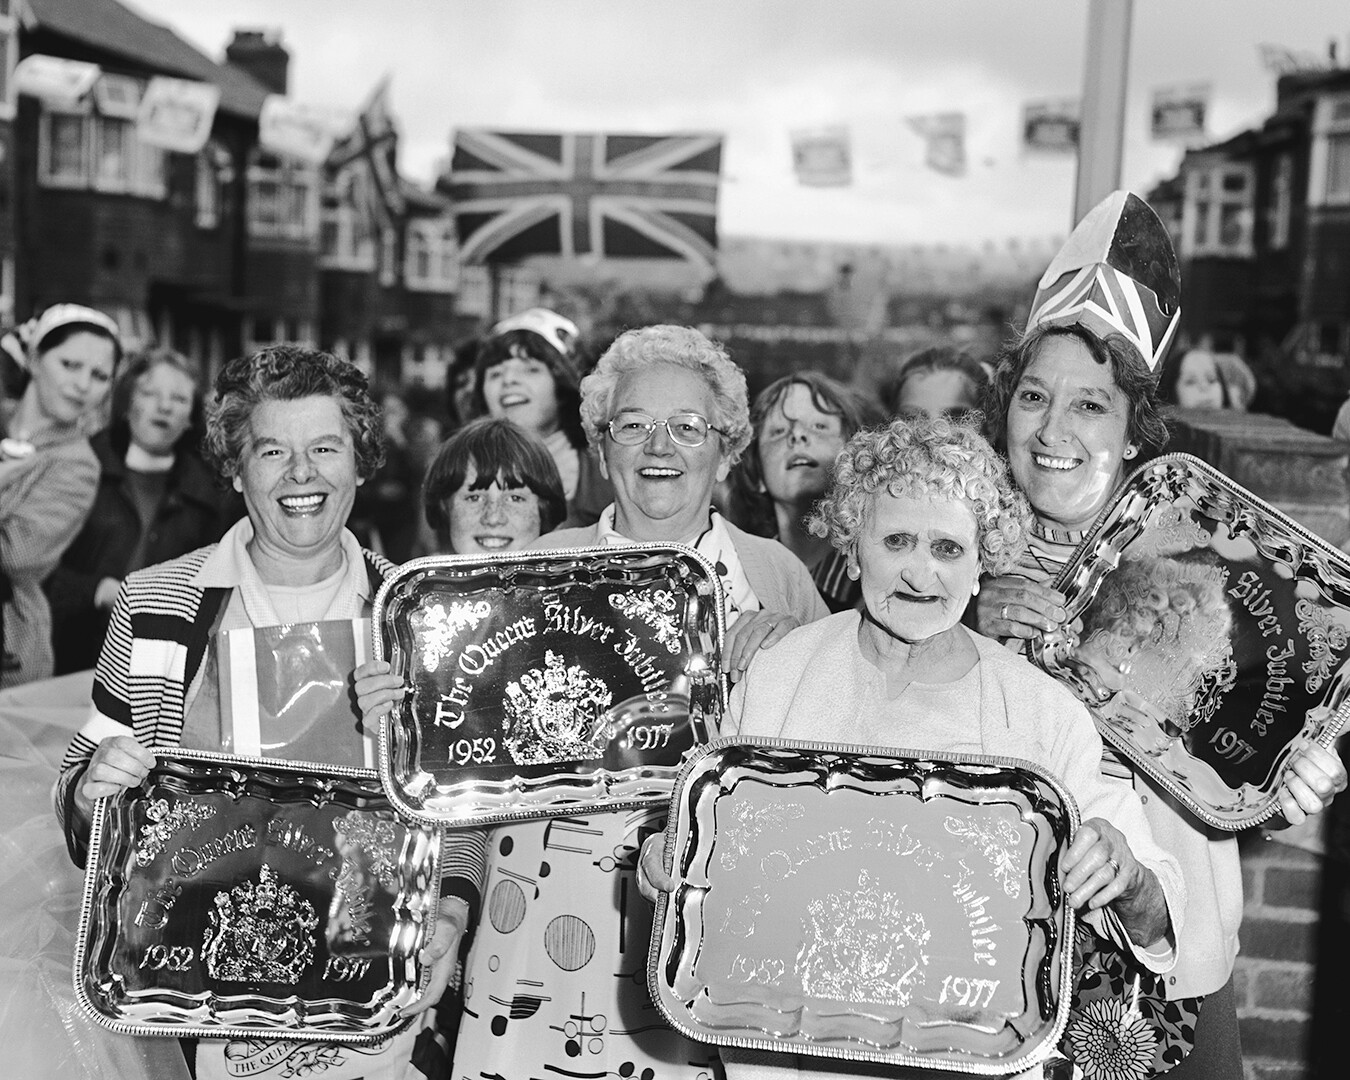 Празднование Серебряного юбилея королевы, Норт Шилдс, Тайнсайд, 1977 год. Фотограф Крис Киллип